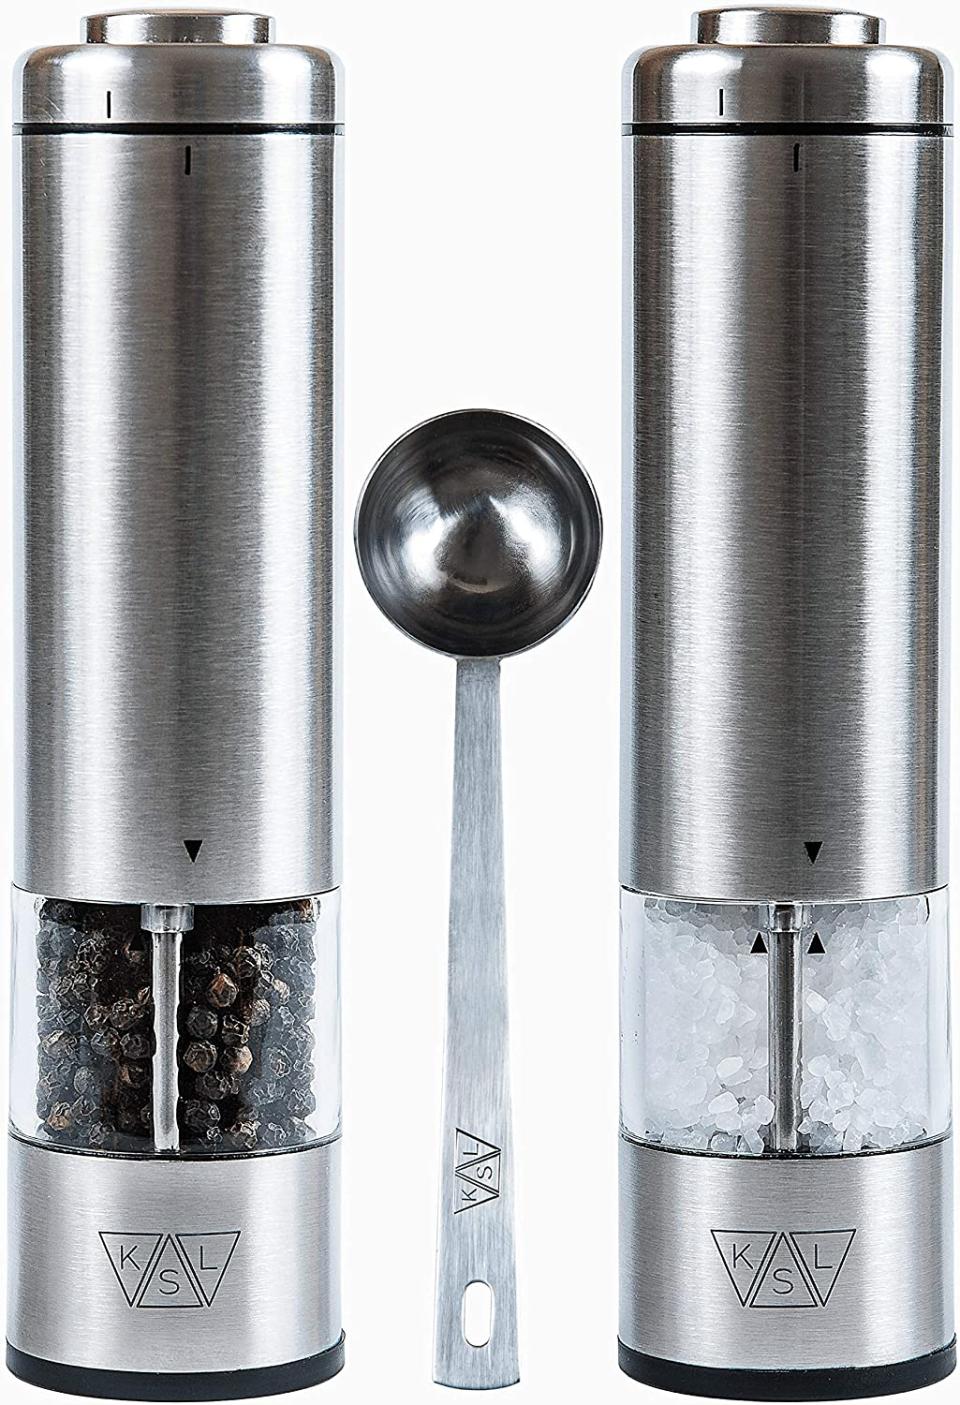 ksl battery electric salt pepper grinder